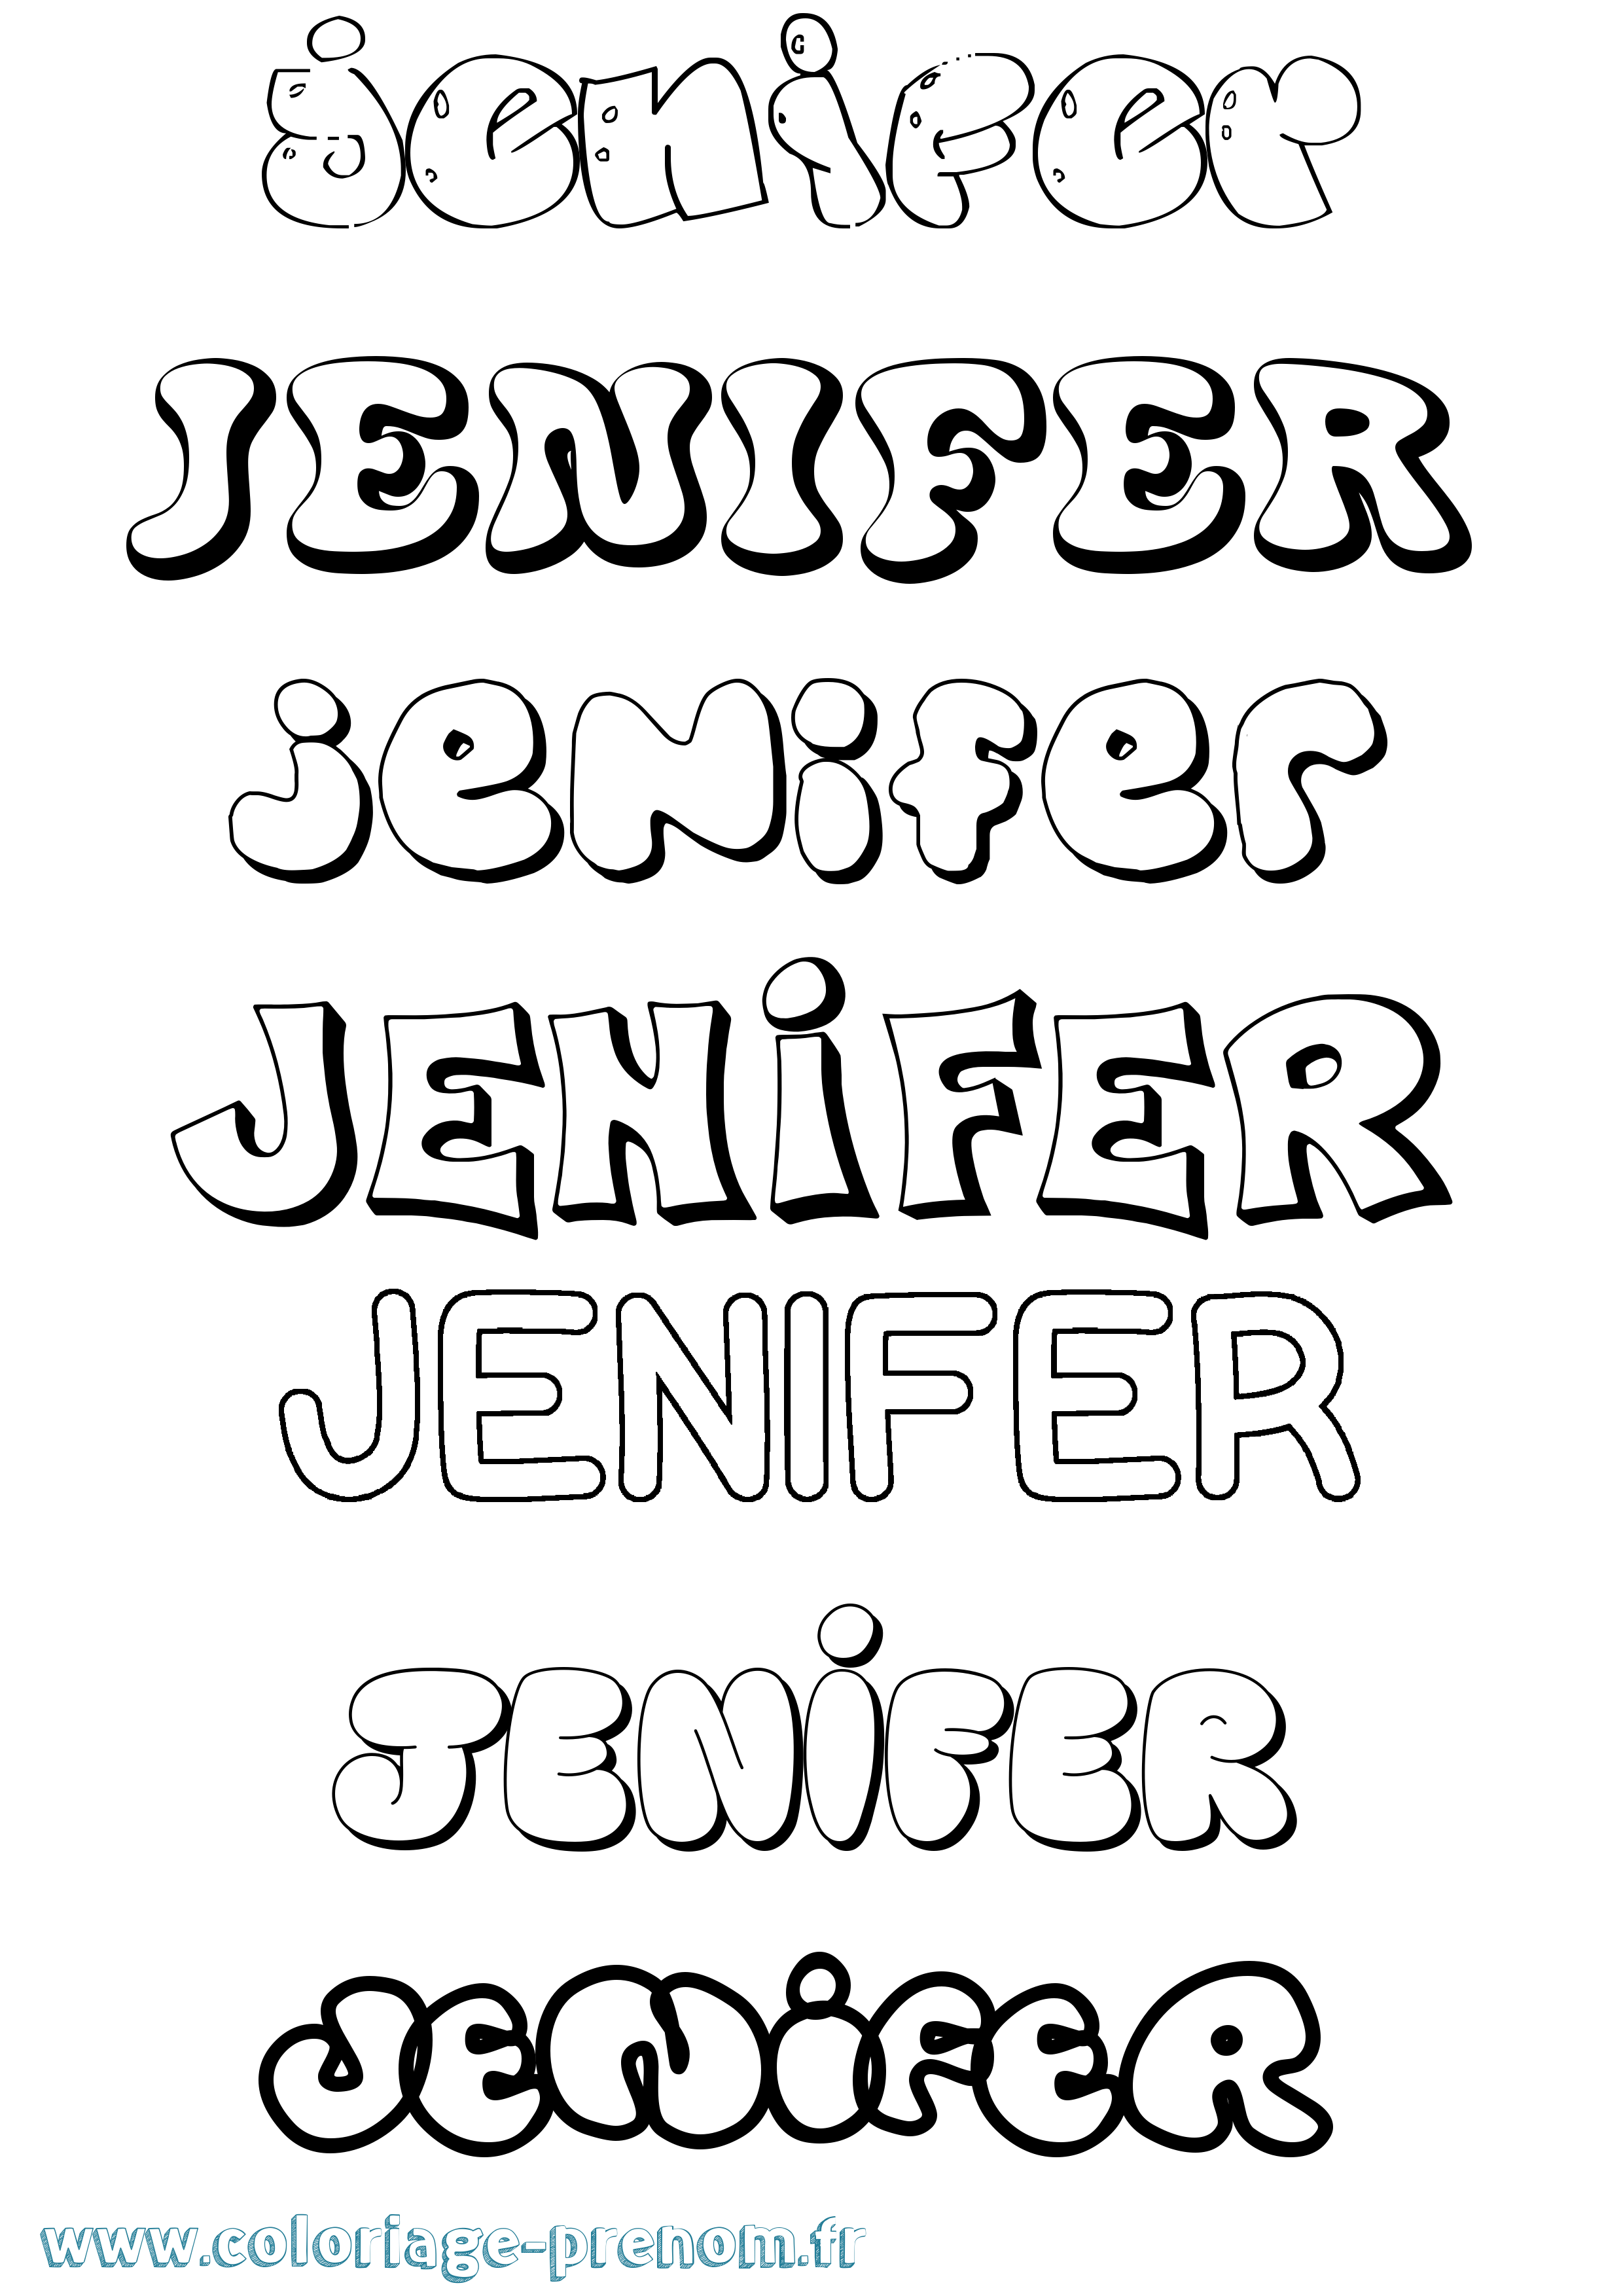 Coloriage prénom Jenifer Bubble